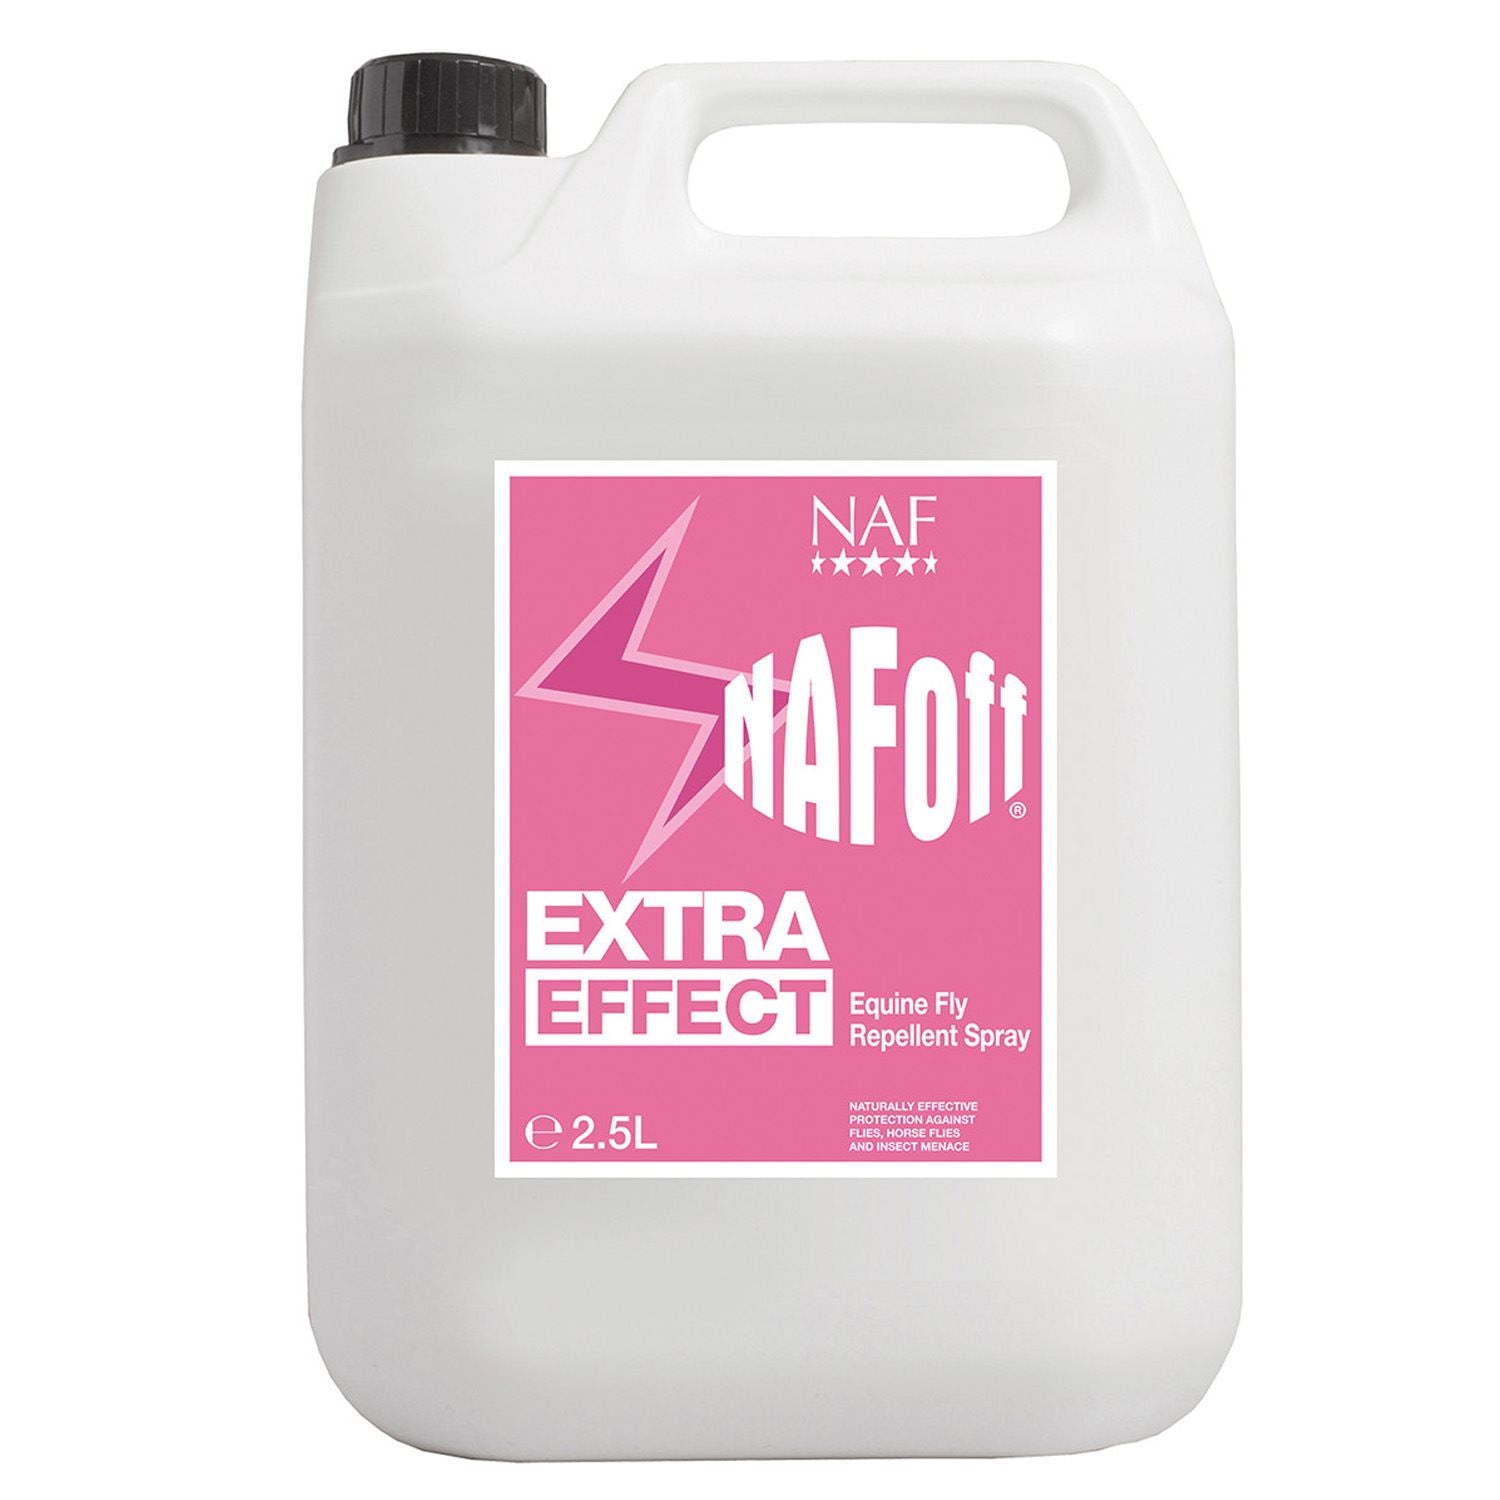 NAF Naf Off Extra Effect - Just Horse Riders